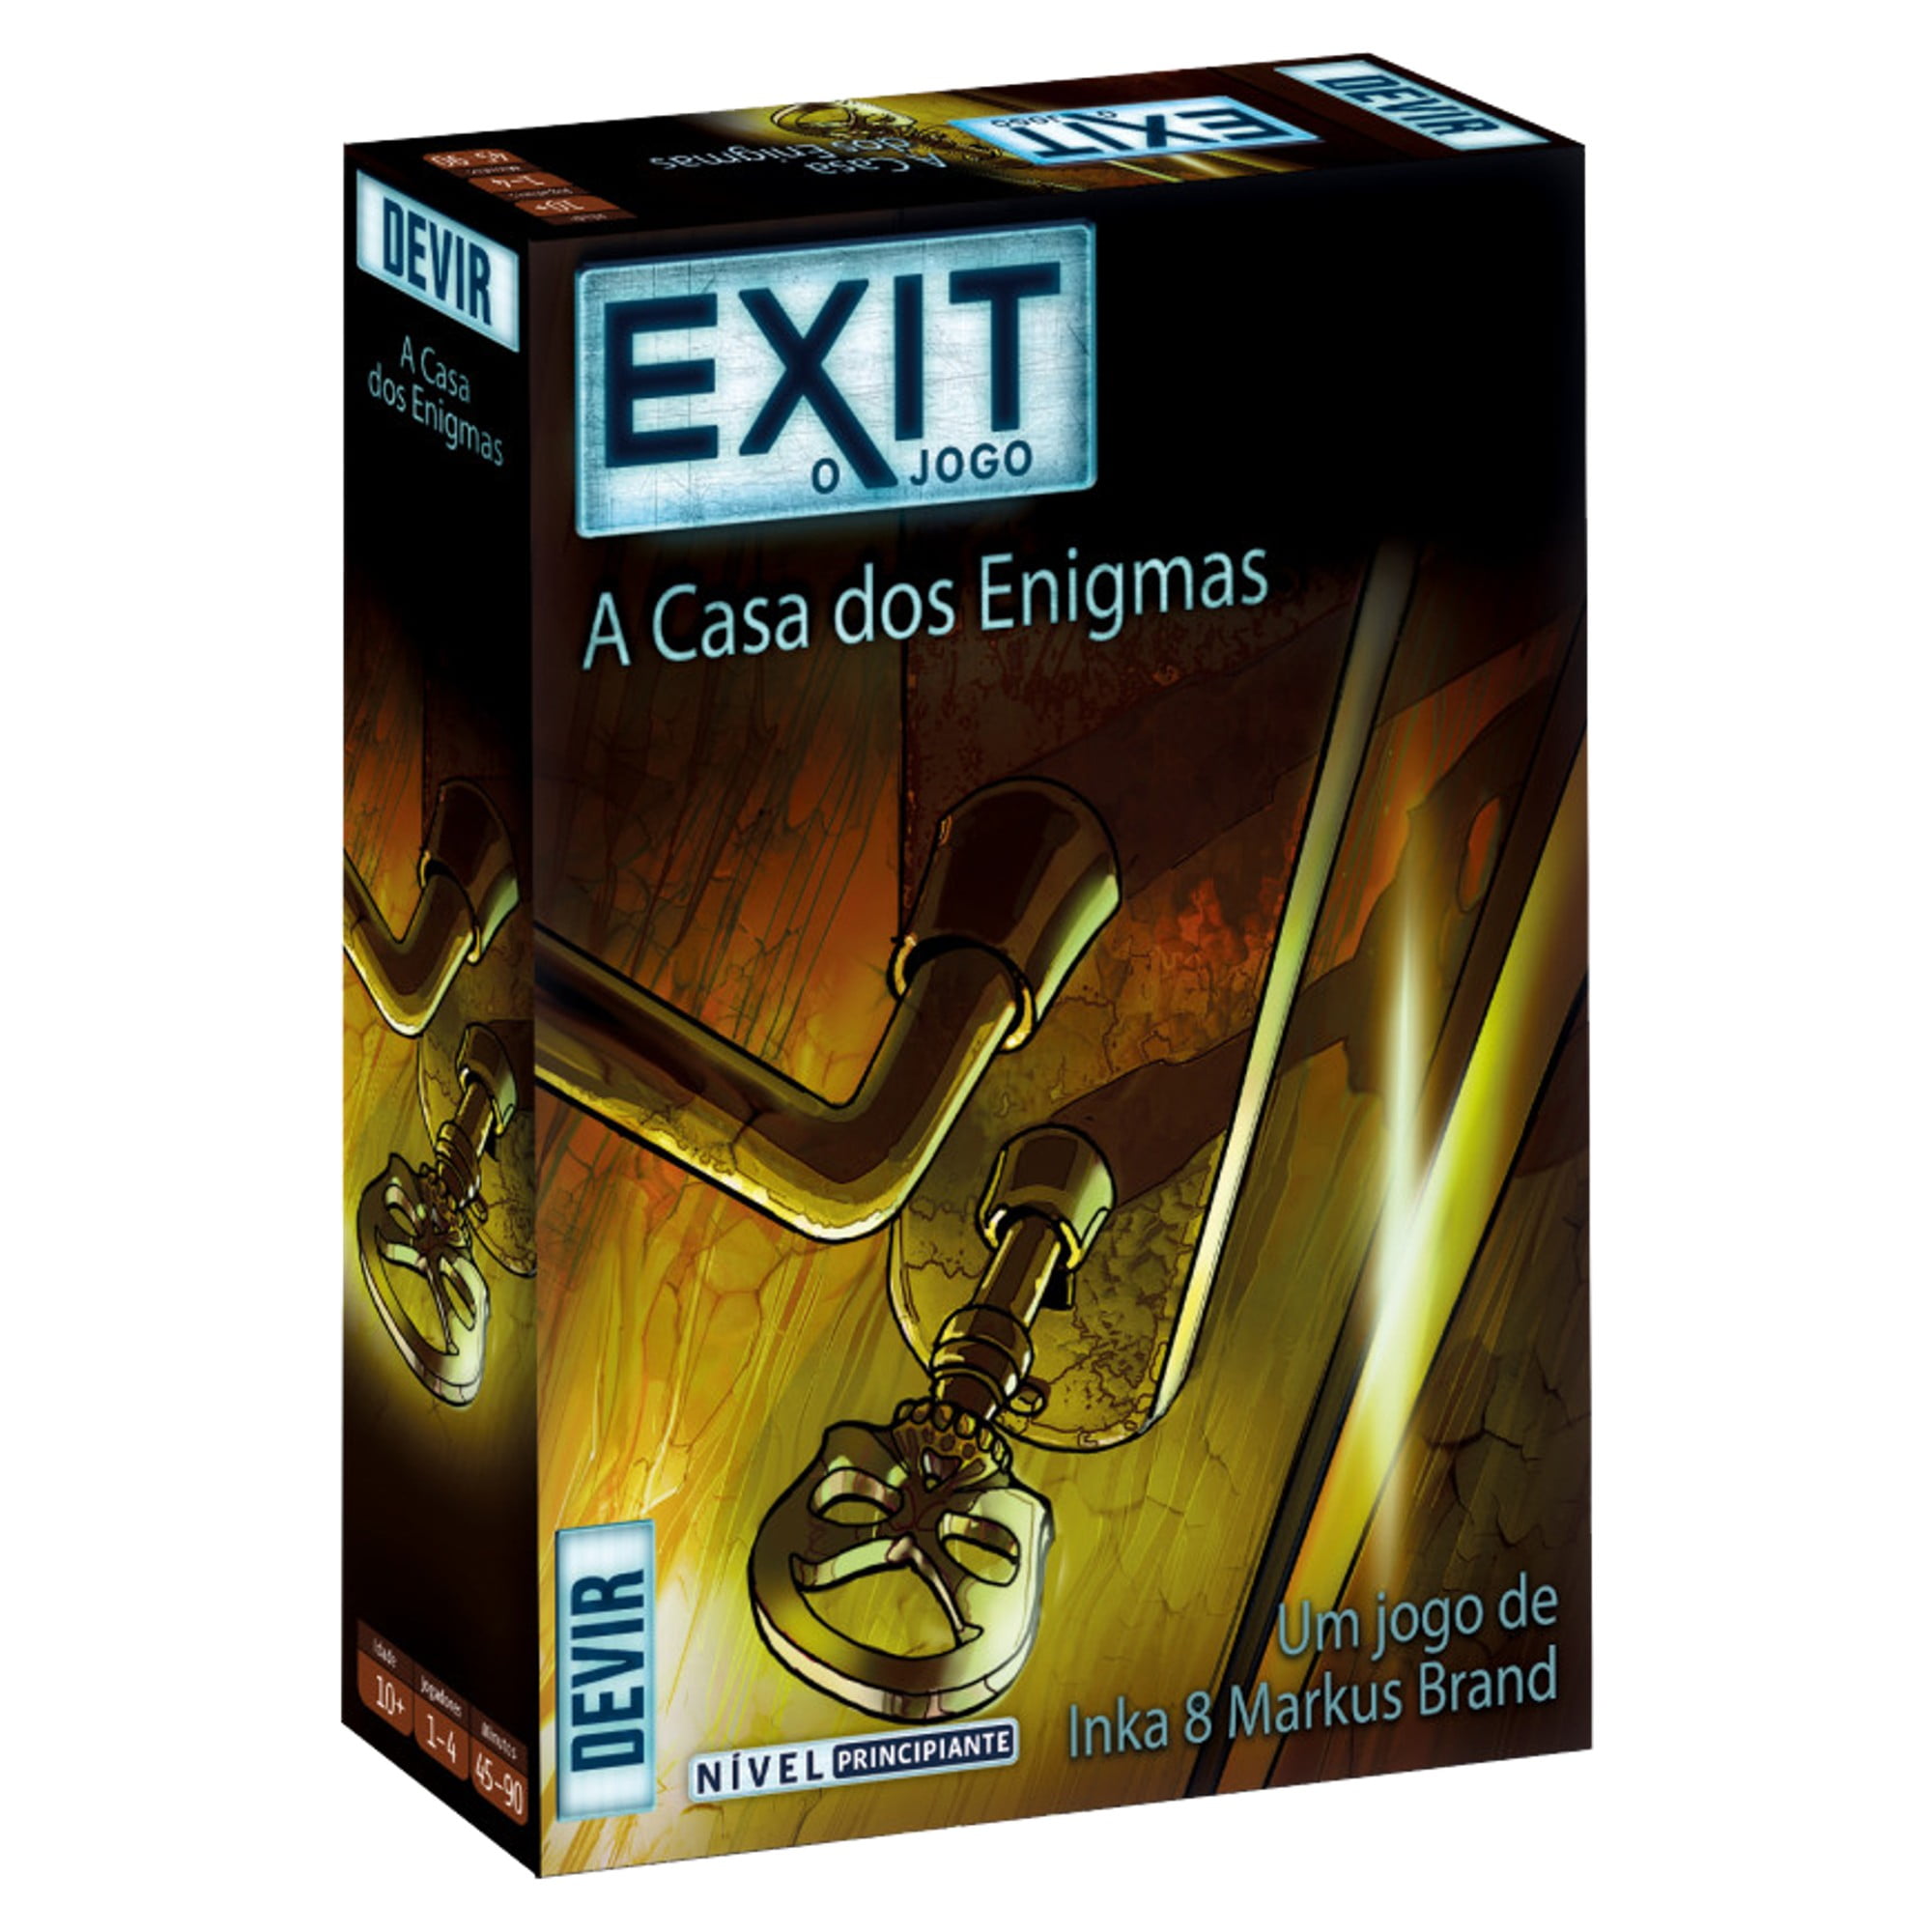 Exit - A Casa dos Enigmas